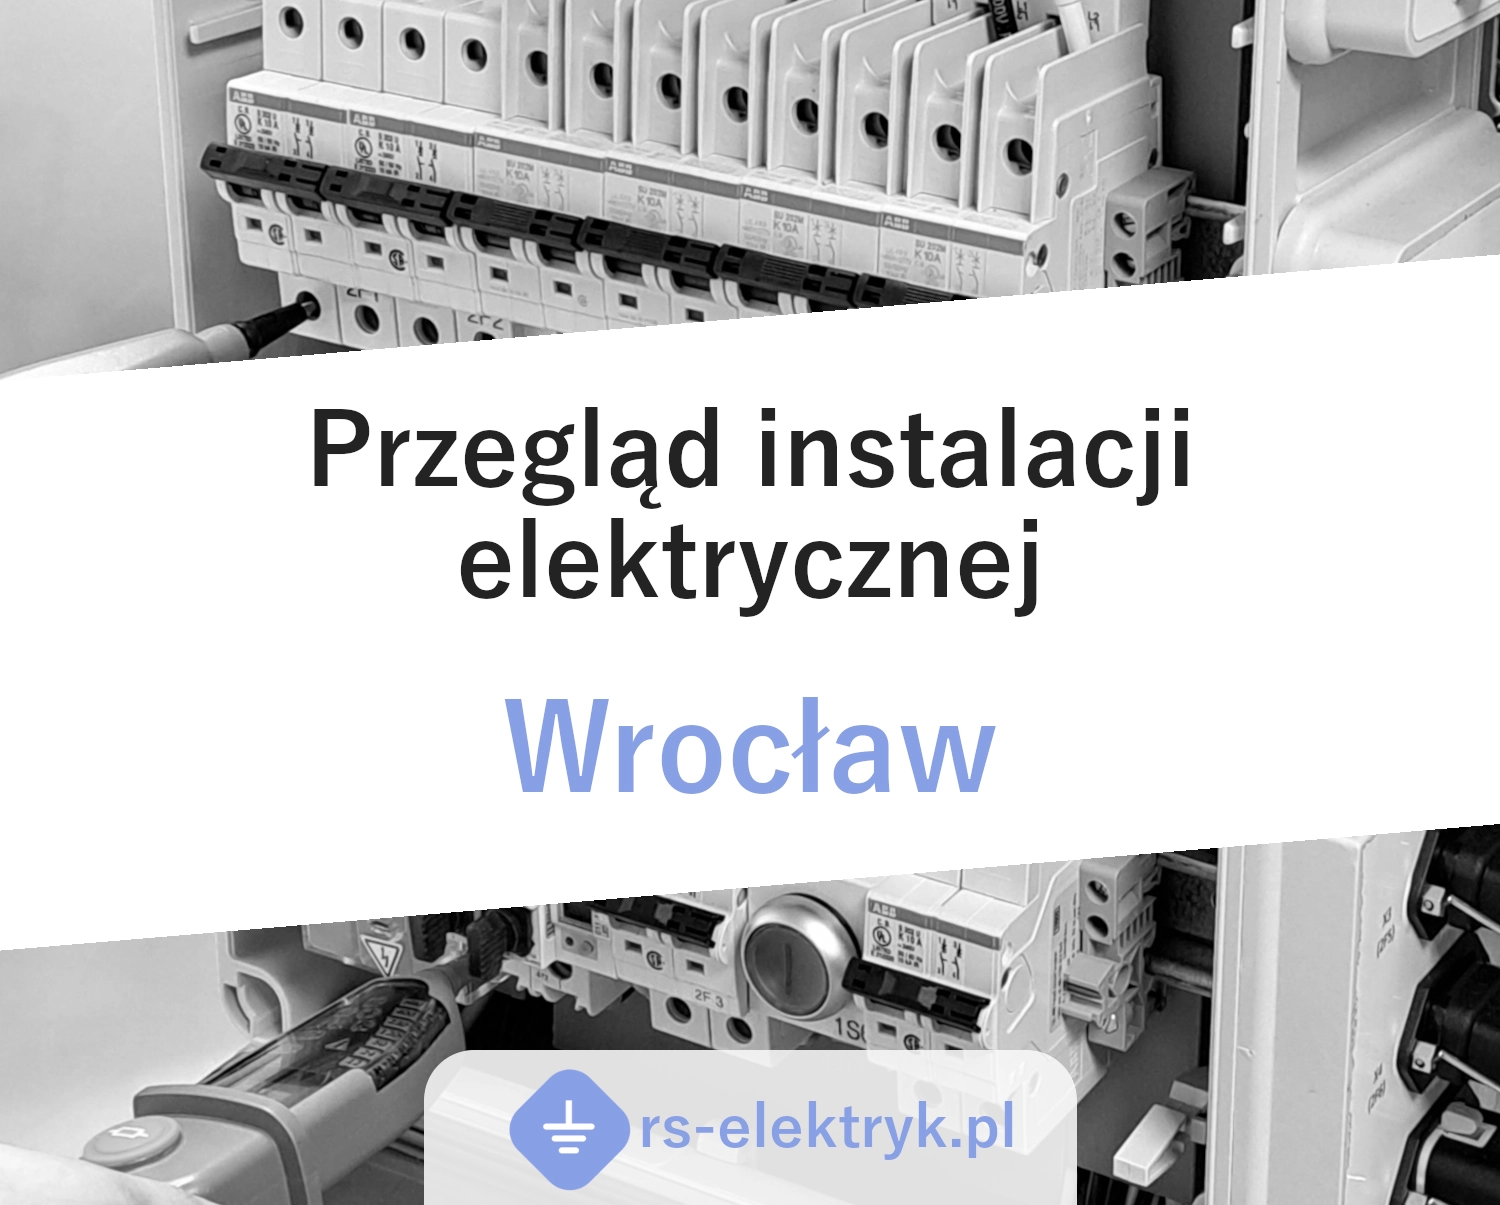 Przegląd instalacji elektrycznej (Wrocław)